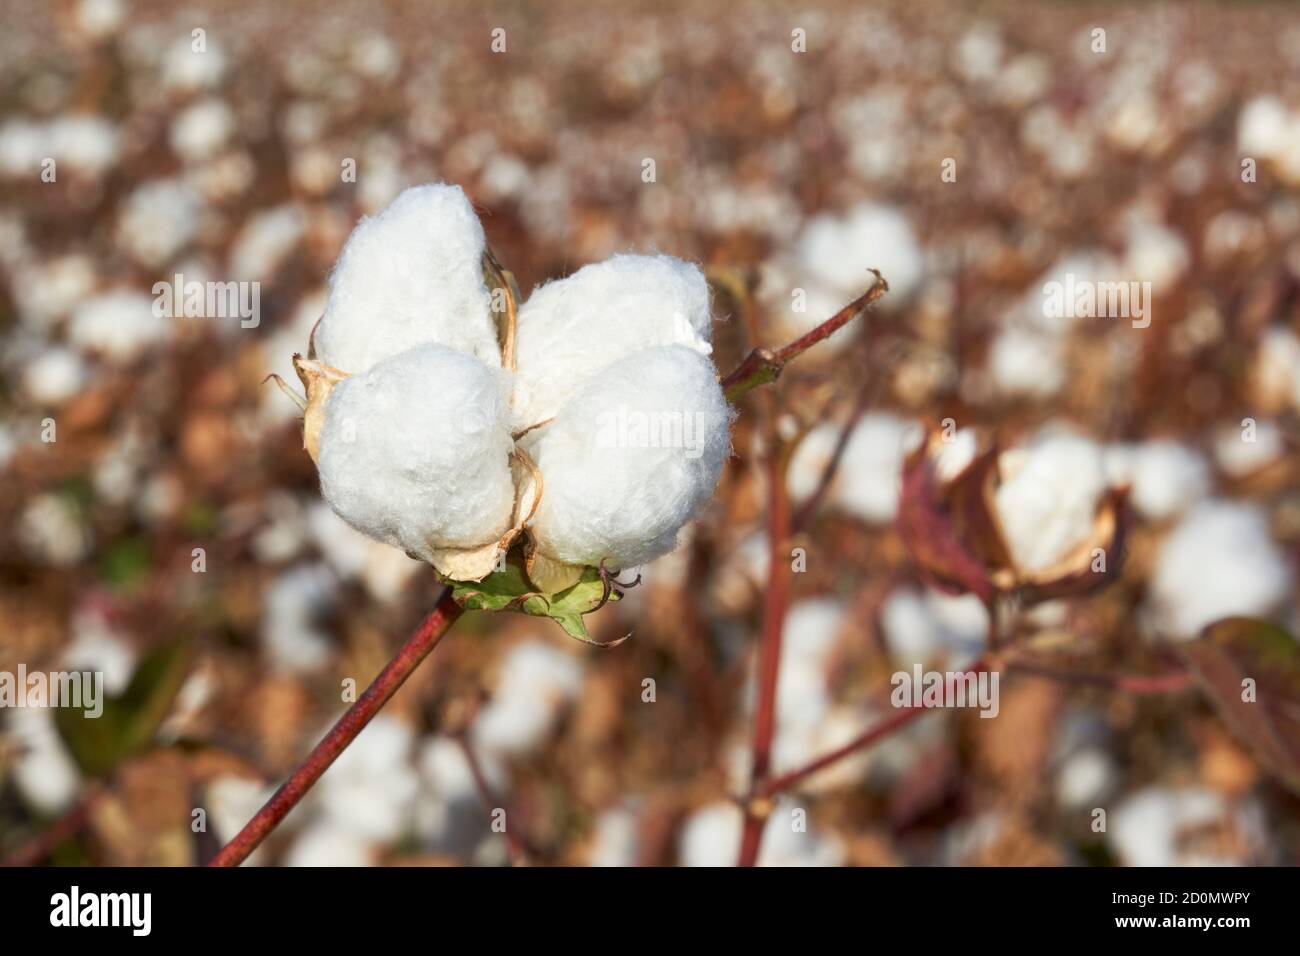 Baumwollplantage in Puebla de Cazalla, Provinz Sevilla. Andalusien, Spanien Stockfoto